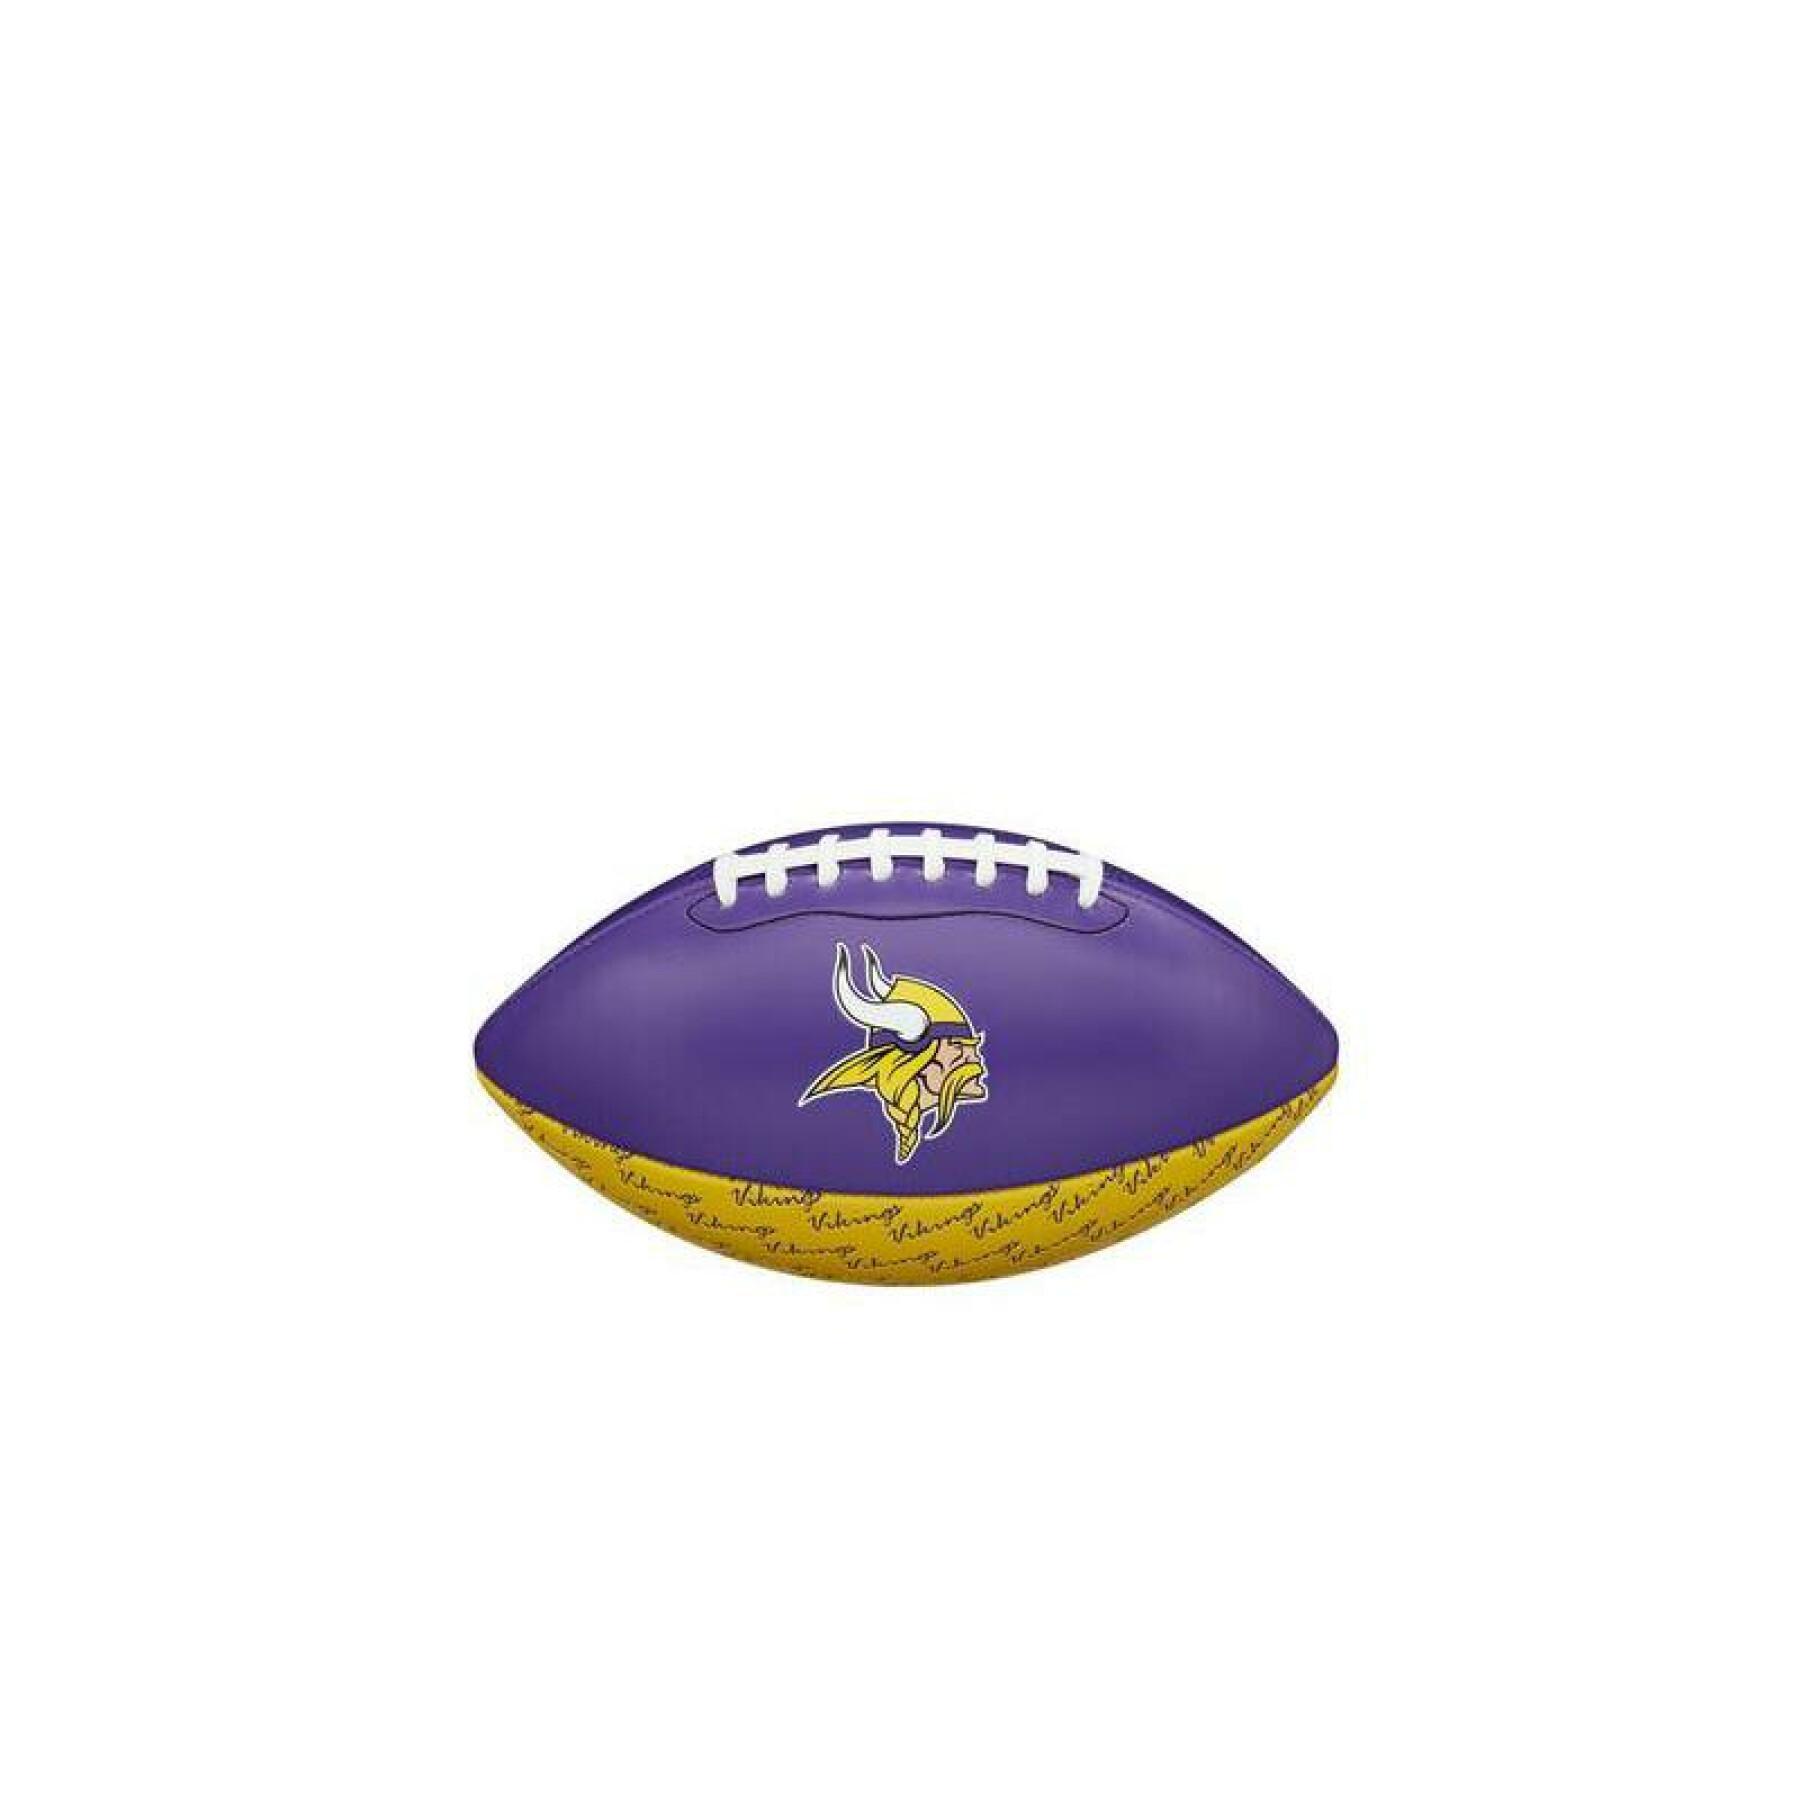 Mini balón infantil nfl Minnesota Vikings